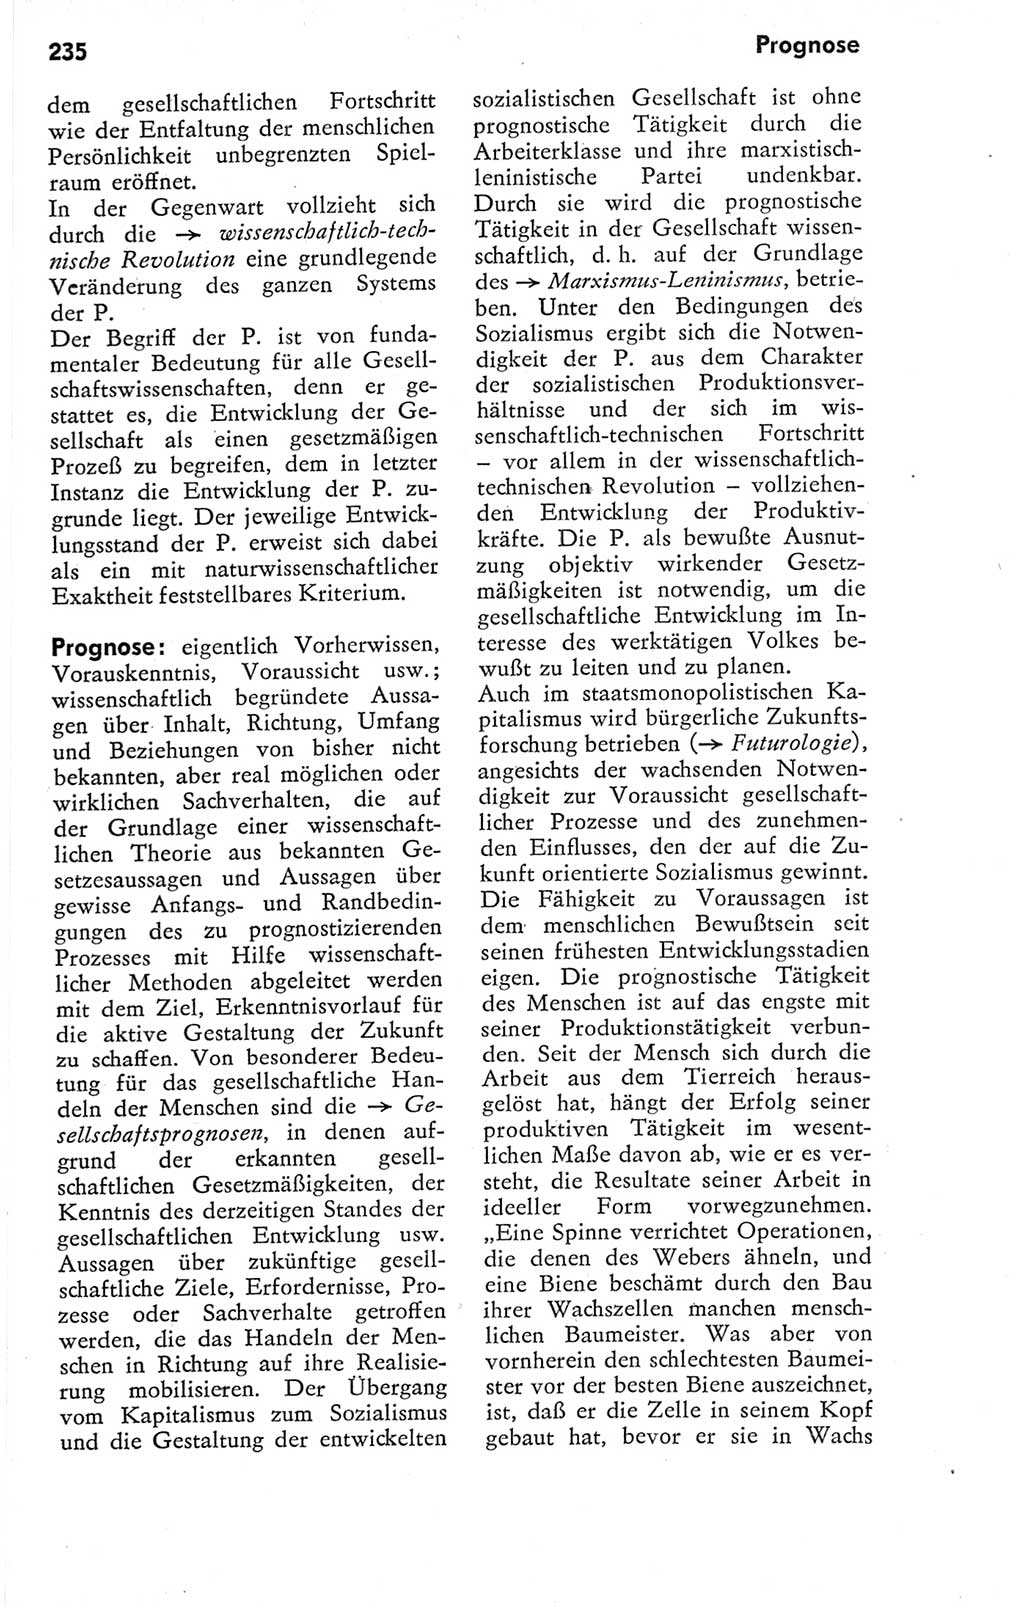 Kleines Wörterbuch der marxistisch-leninistischen Philosophie [Deutsche Demokratische Republik (DDR)] 1974, Seite 235 (Kl. Wb. ML Phil. DDR 1974, S. 235)